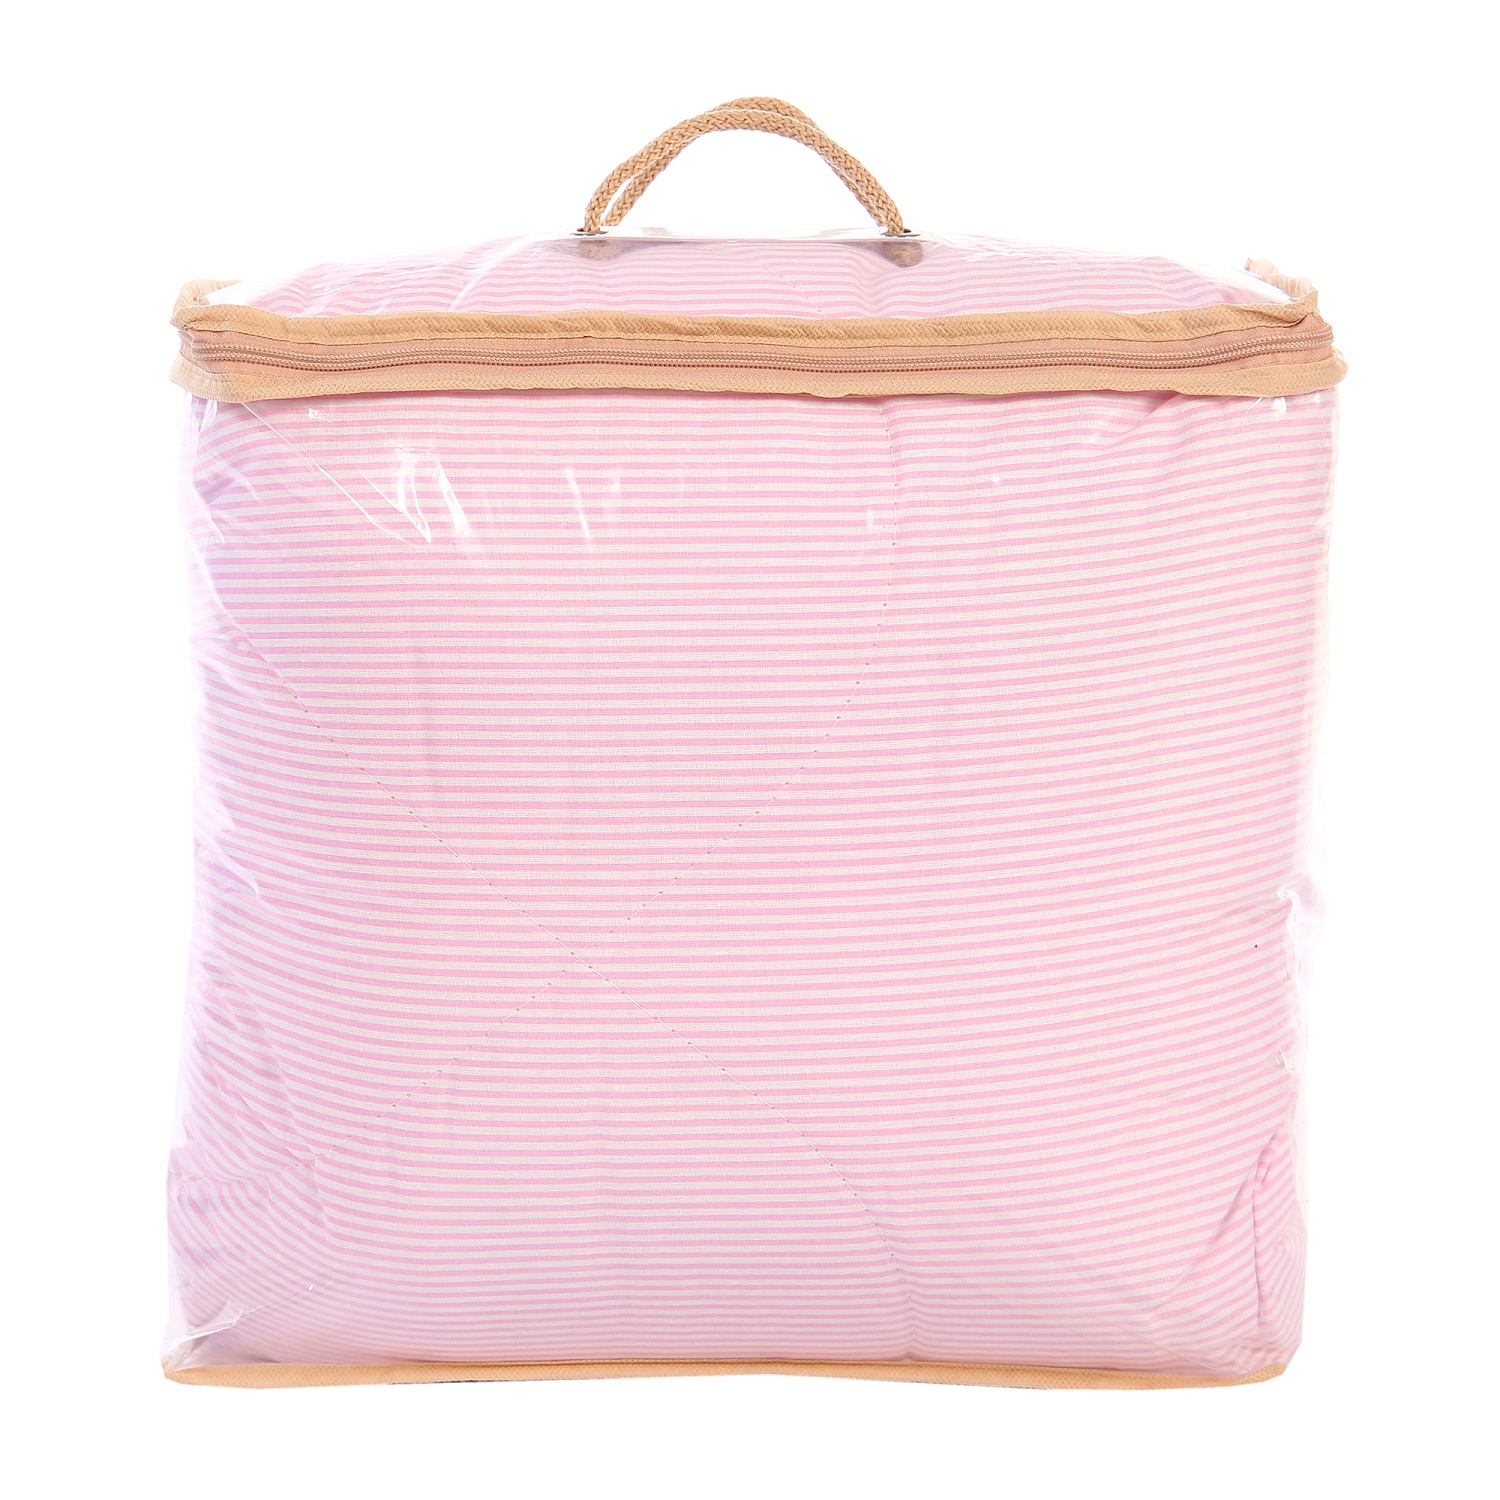 Одеяло Спаленка-kids детское Sweets 1.5-спальное розовые полоски - фото 4